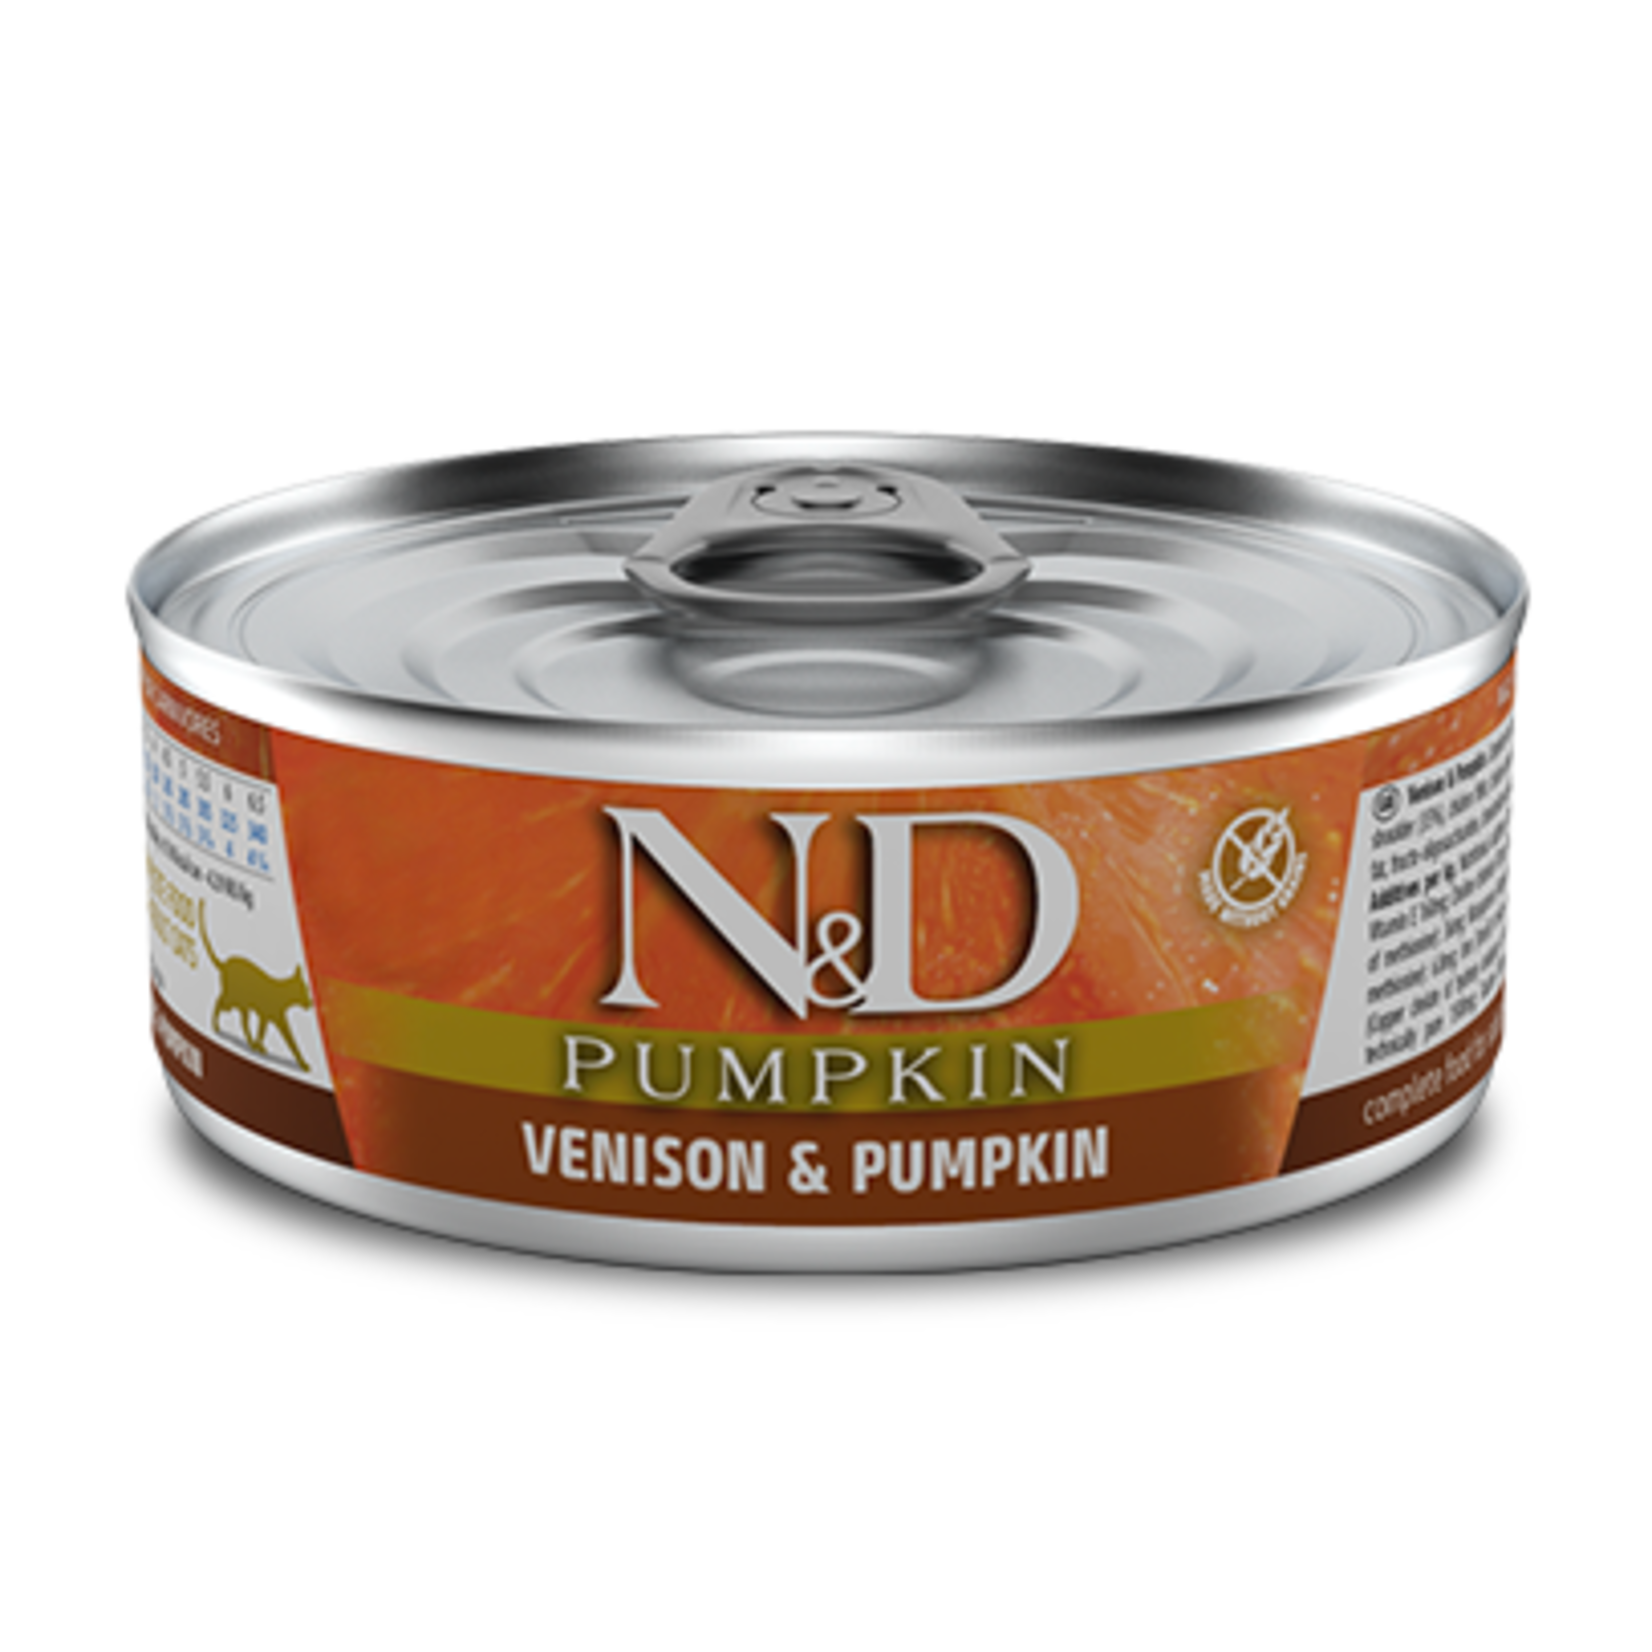 Farmina N&D Pumpkin - Venison - G Free - 2.8 oz